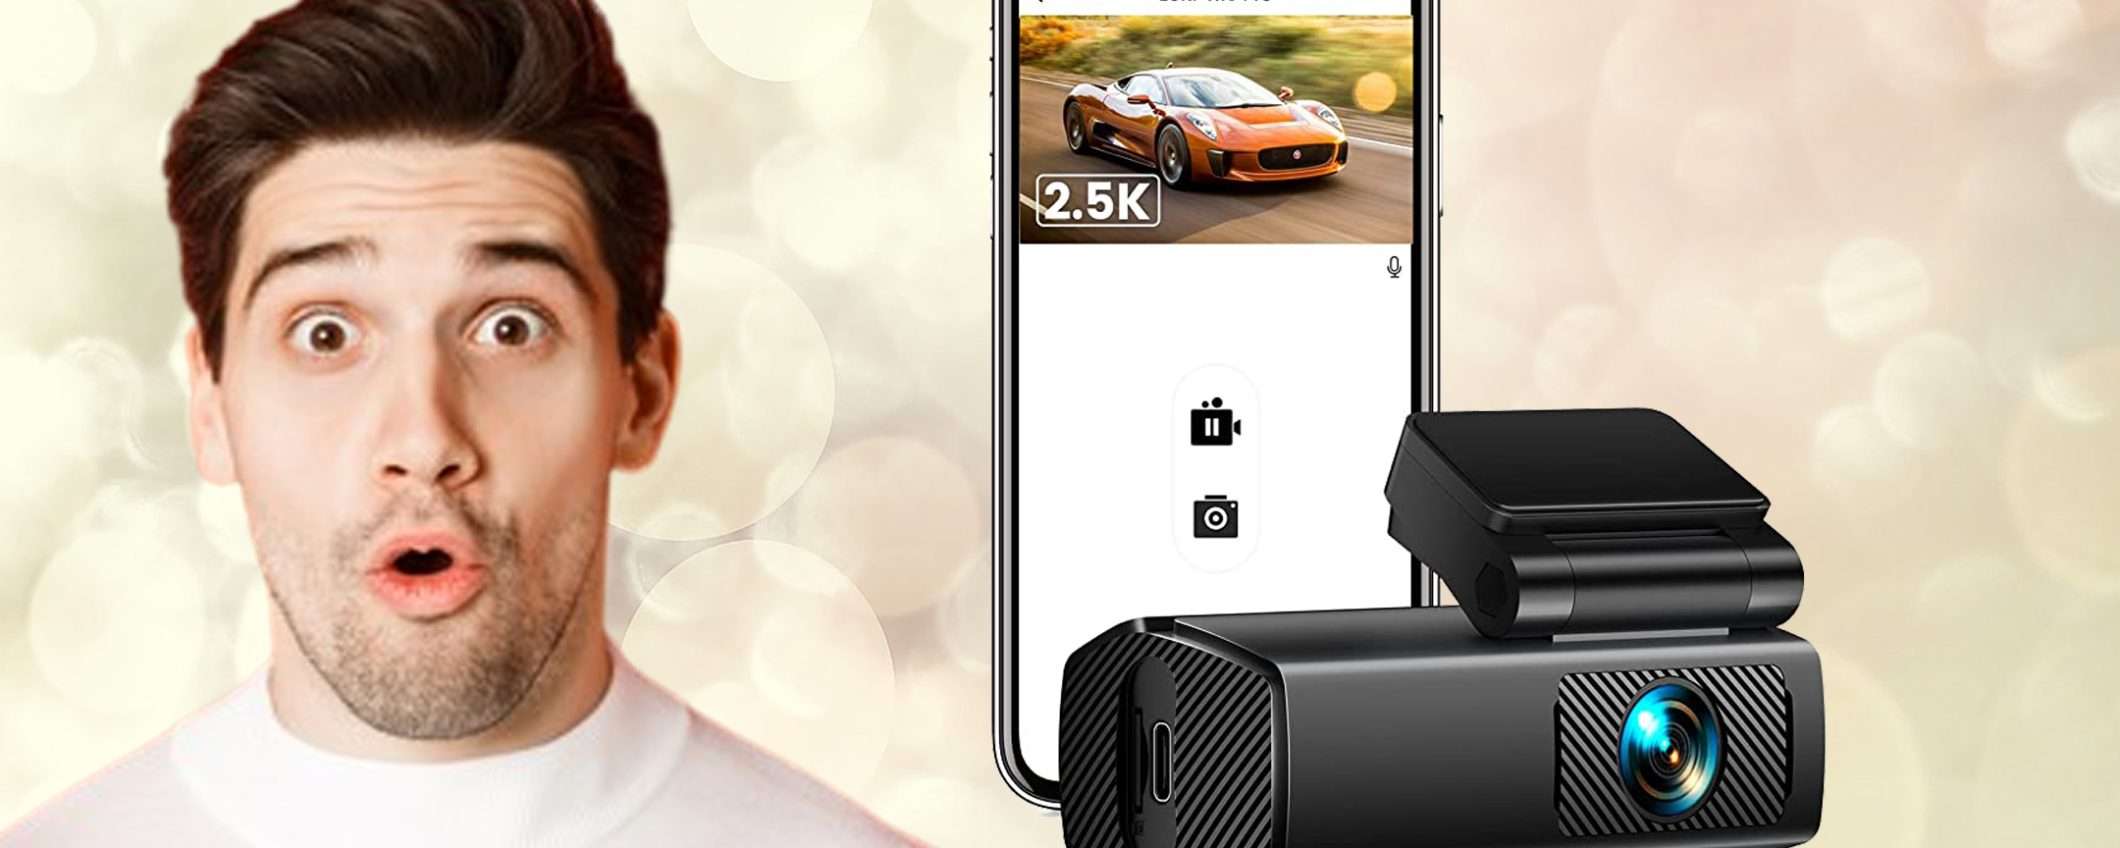 Dash Cam per auto Full HD 2.5K al prezzo BOMBA su Amazon (-24%)